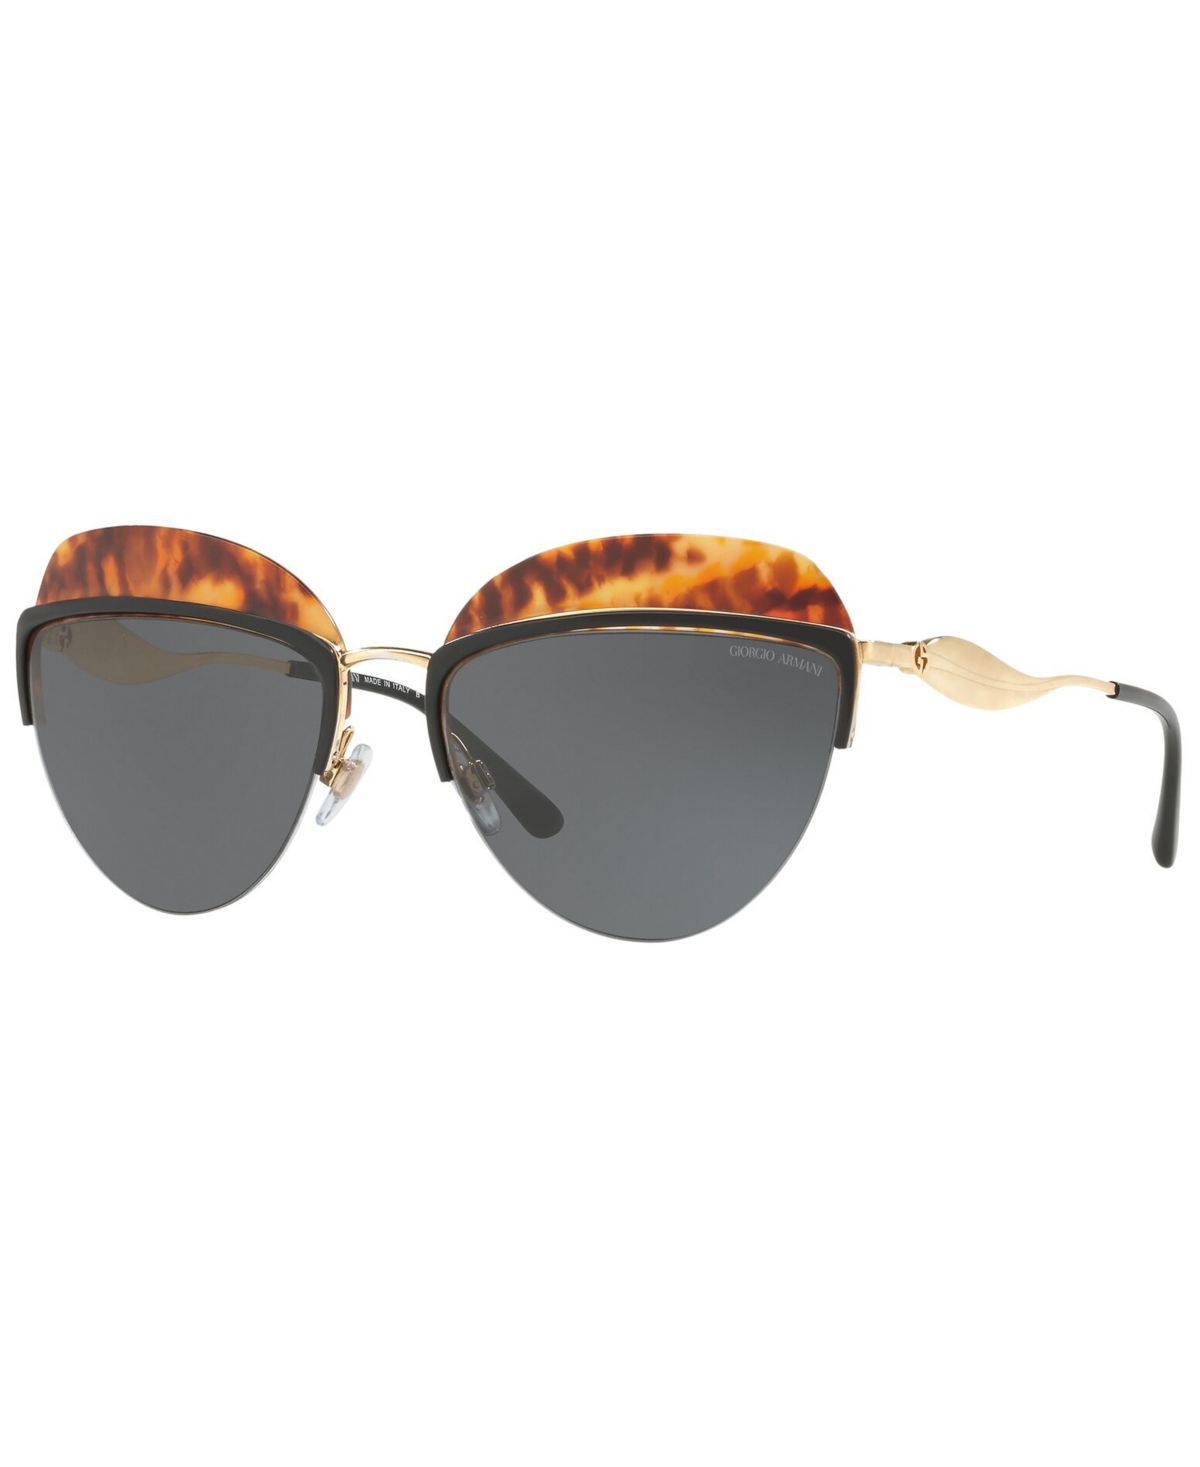 Giorgio Armani Women's Sunglasses, Ar6061 In Gold